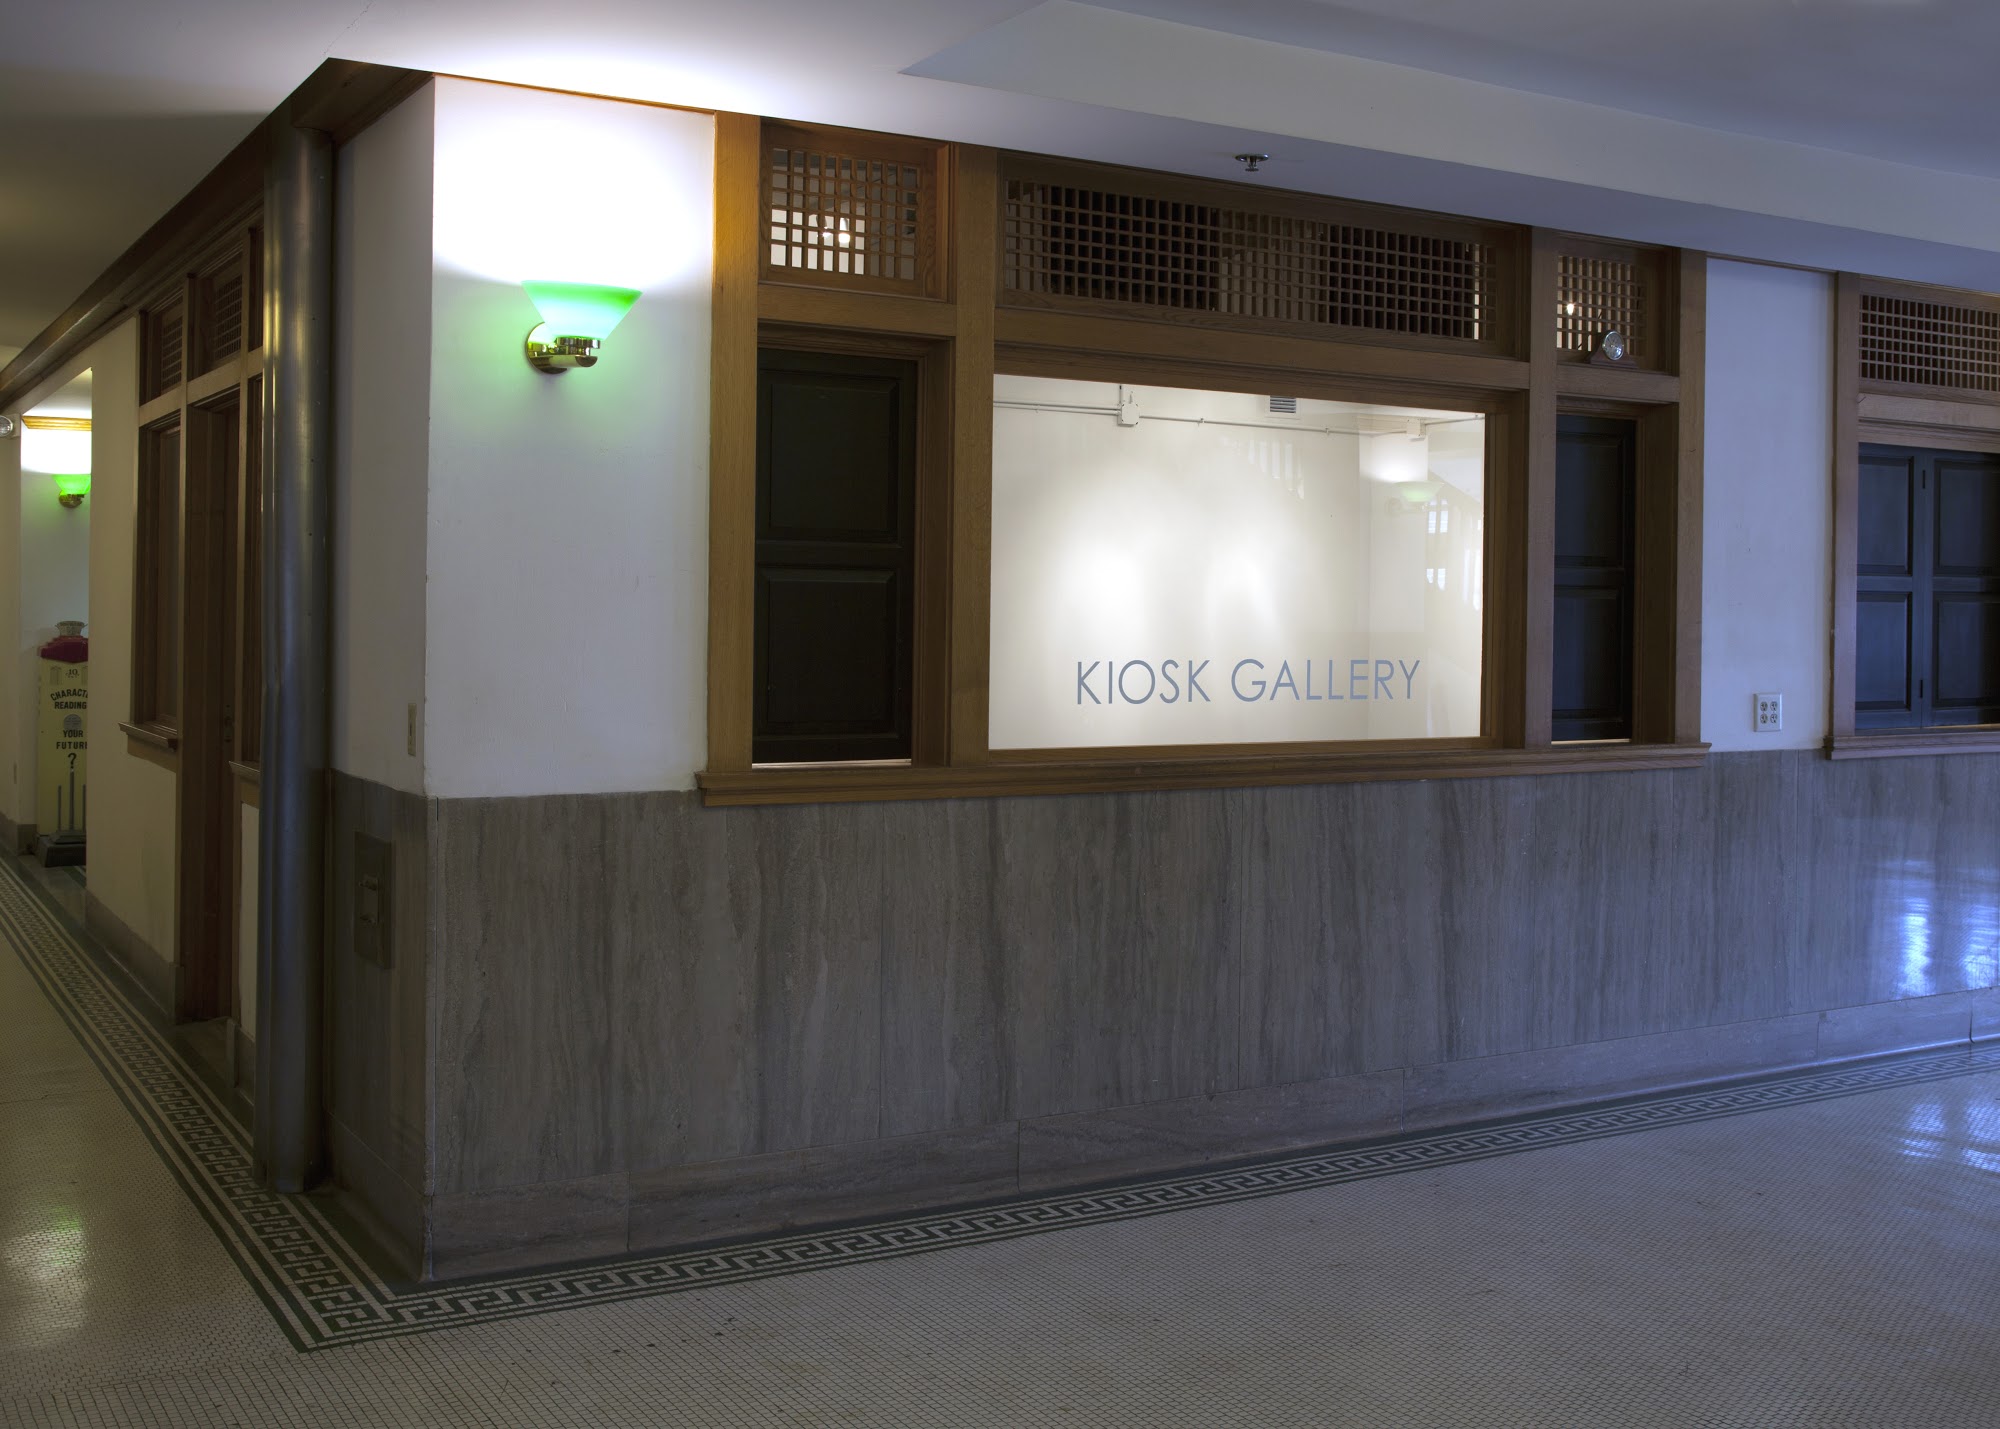 Kiosk Gallery